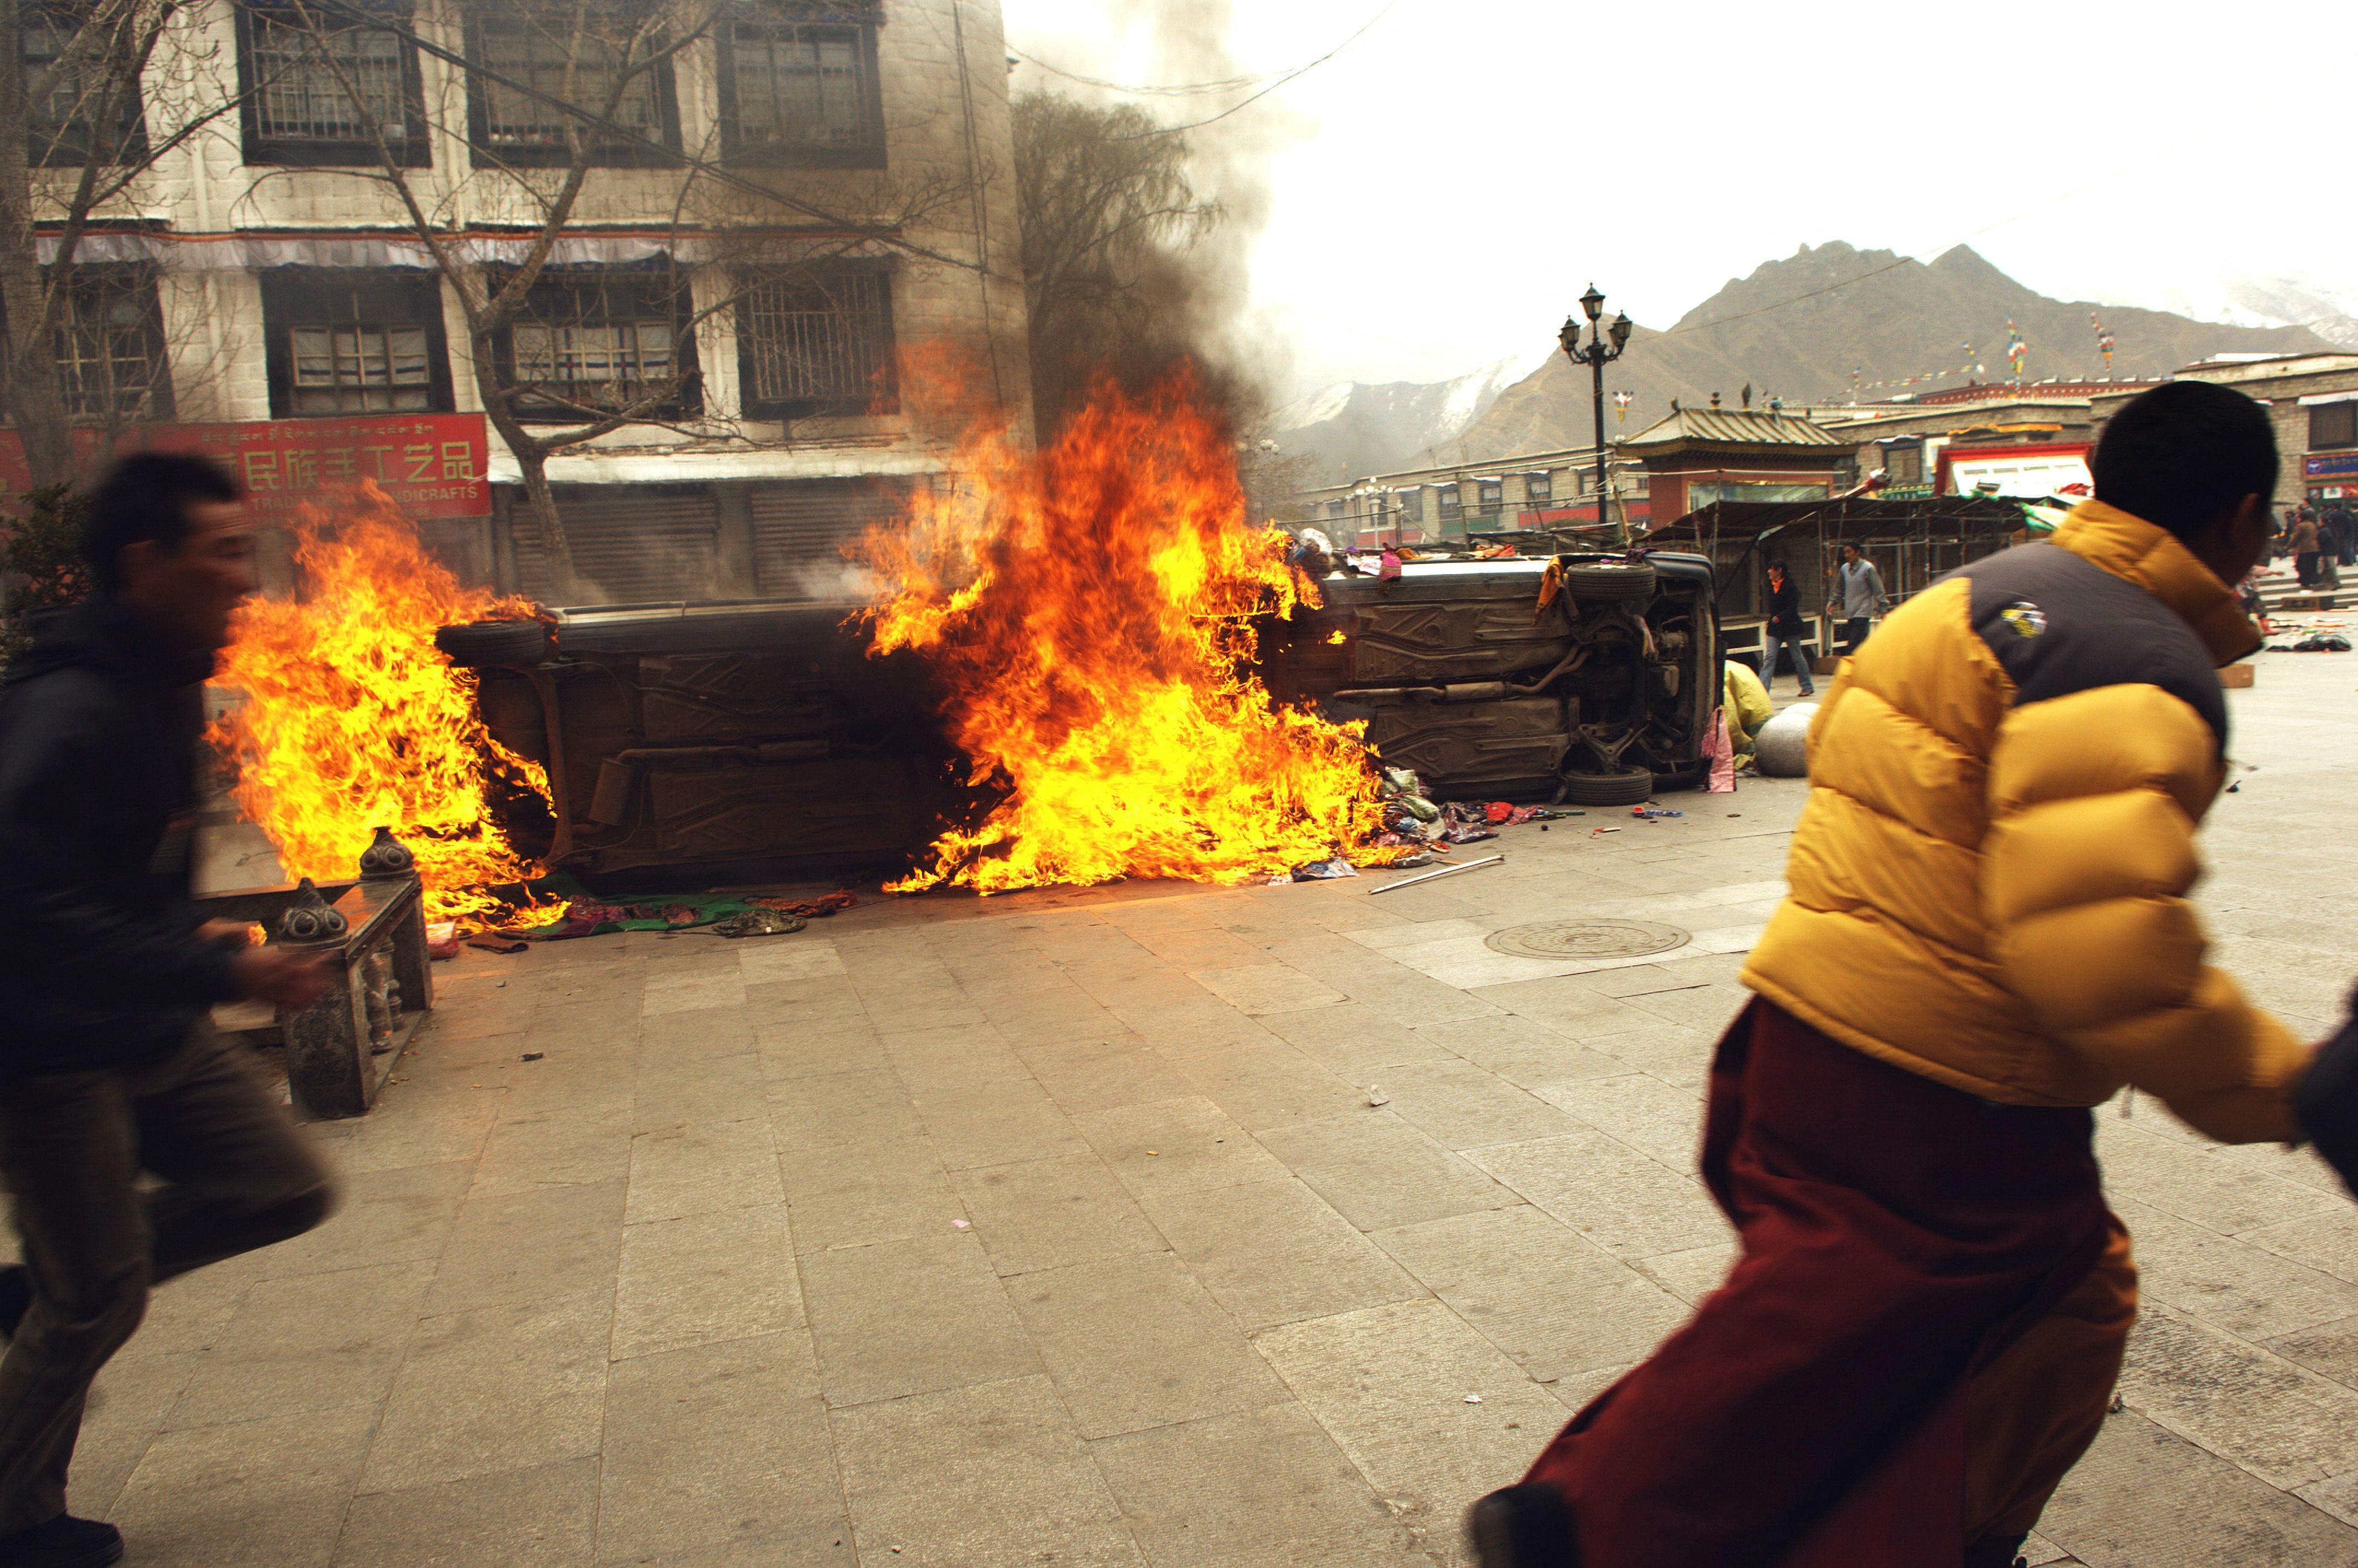 Das am 22. März 2008 aufgenommene Foto zeigt einen Tibeter, der am 14. März 2008 in Lhasa an brennenden Fahrzeugen vorbeiläuft, als in der tibetischen Hauptstadt tödliche Gewalt ausbrach und Sicherheitskräfte mit Schüssen die größten Proteste gegen die chinesische Herrschaft seit zwei Jahrzehnten niederschlugen.